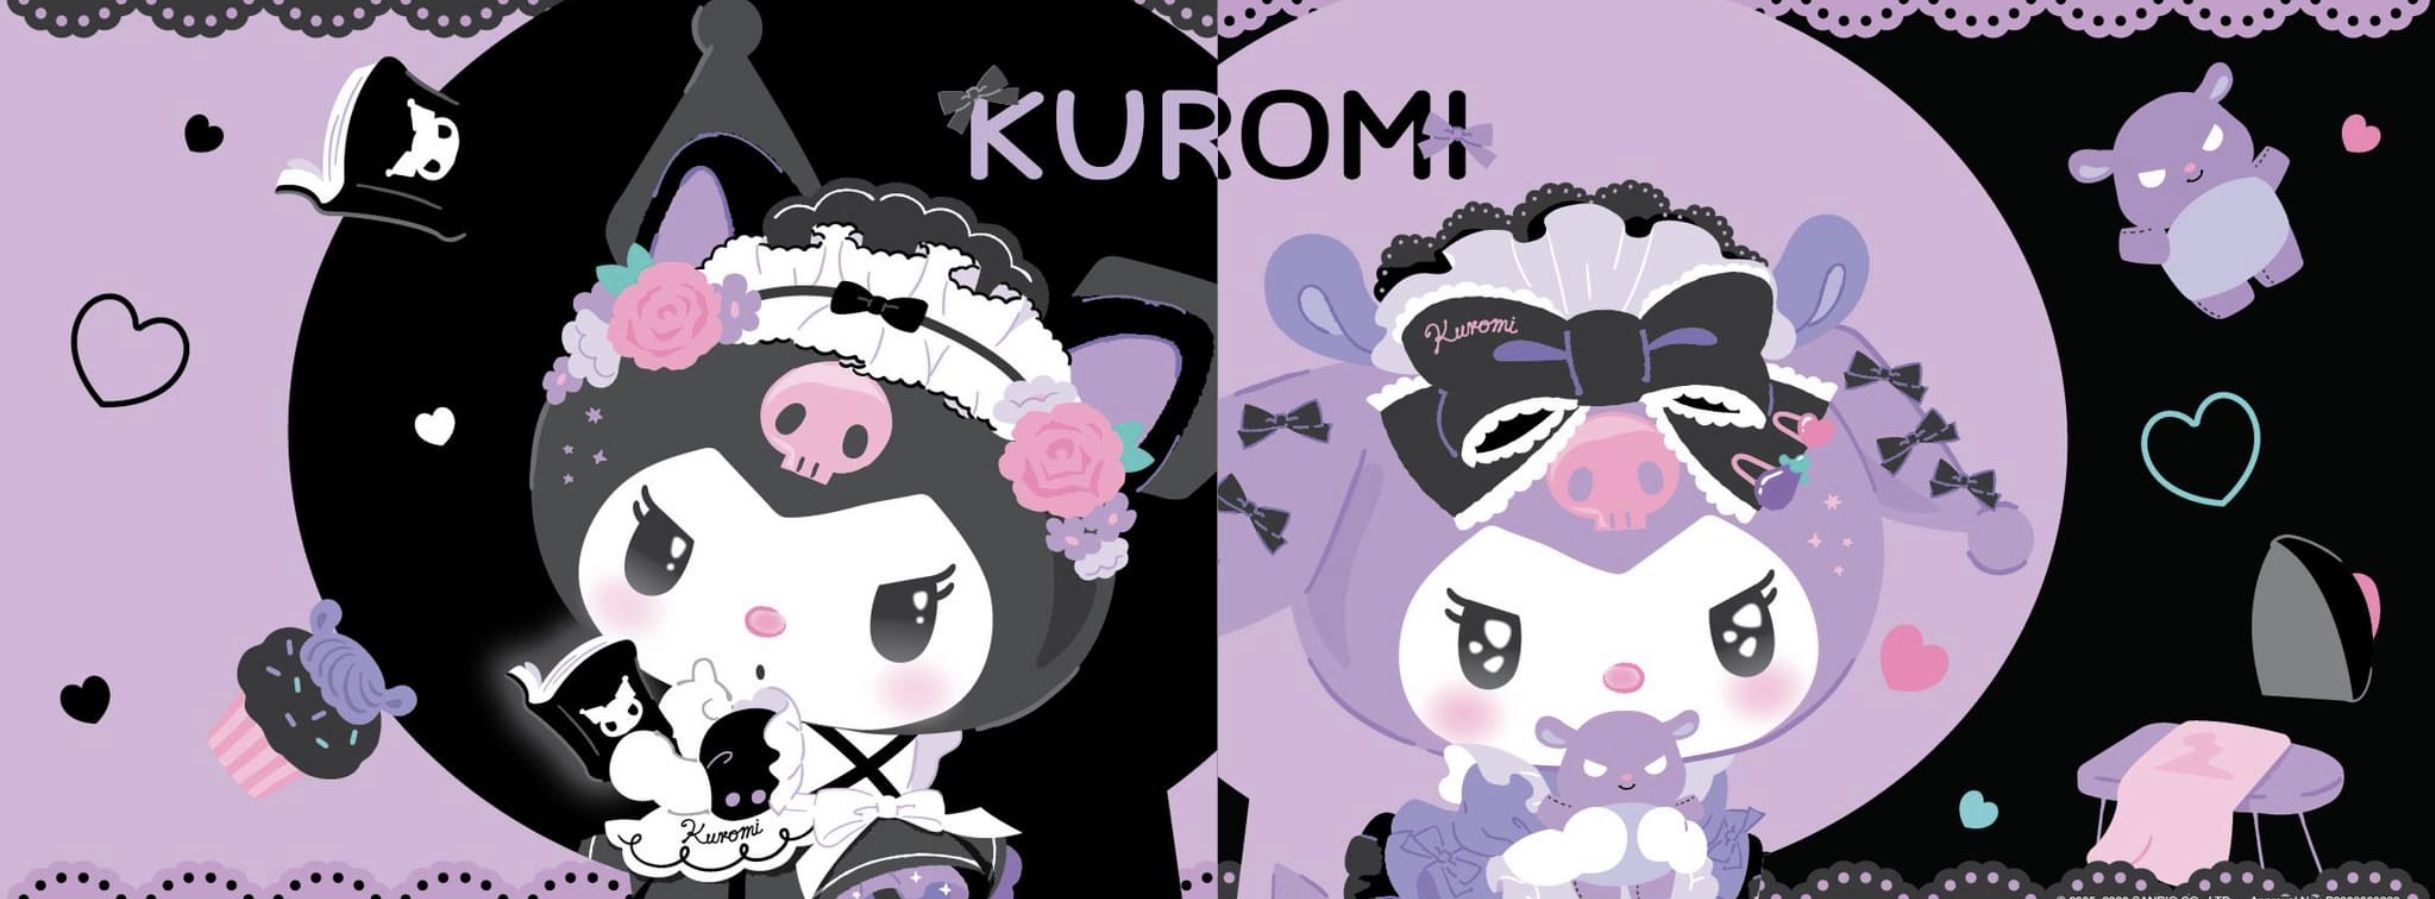 Kuromi. Hello kitty art, Cute wallpaper for computer, Cute pastel wallpaper